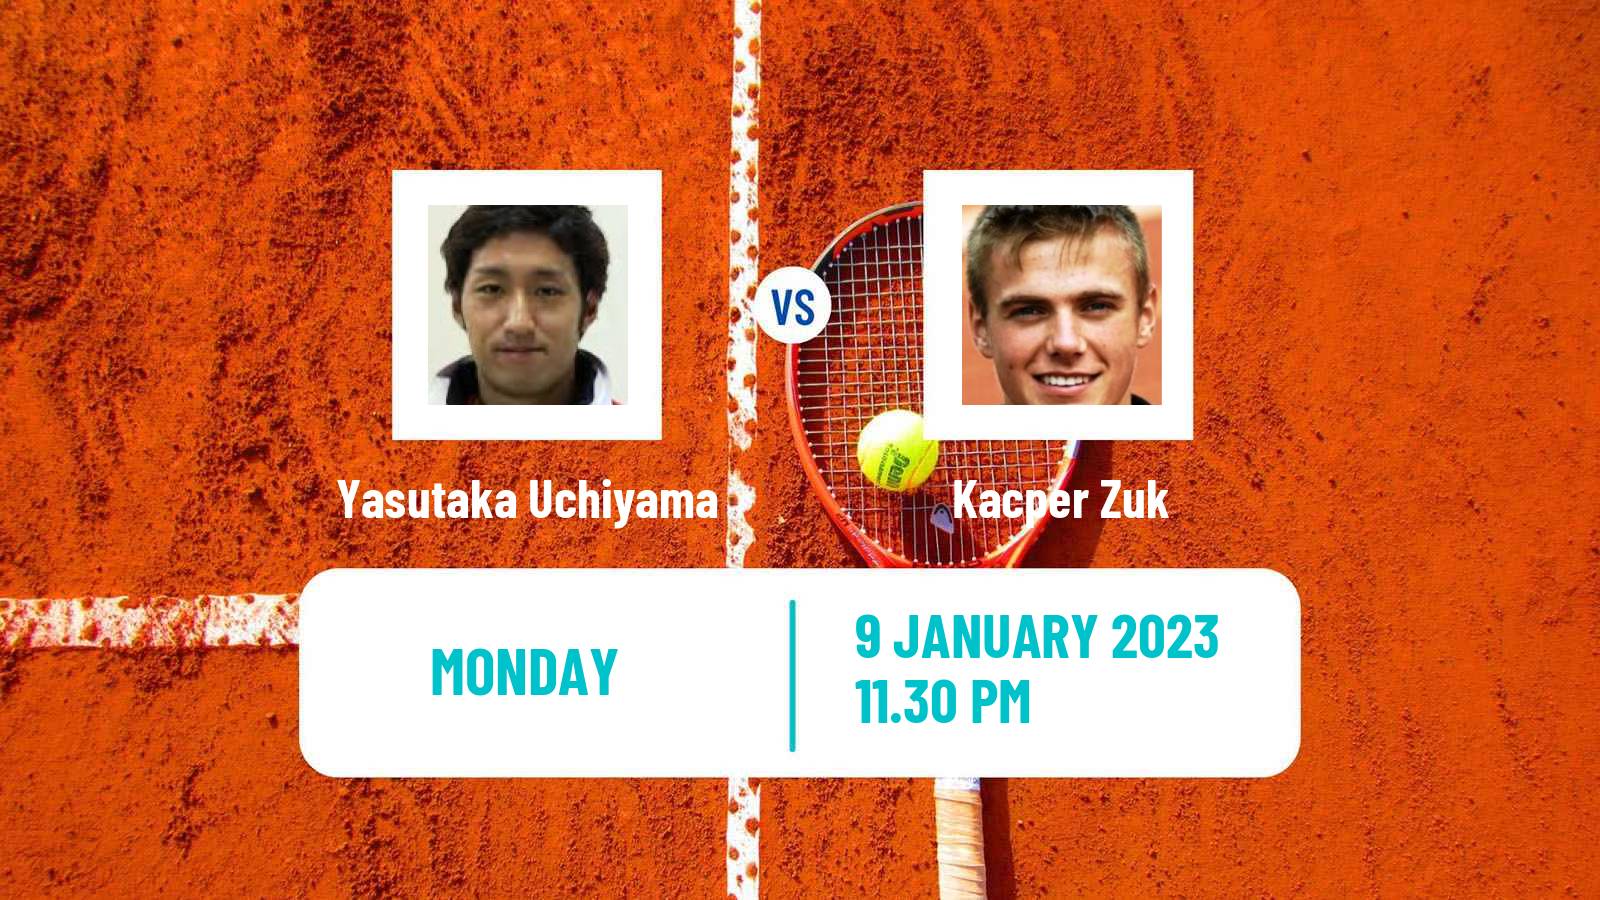 Tennis ATP Challenger Yasutaka Uchiyama - Kacper Zuk